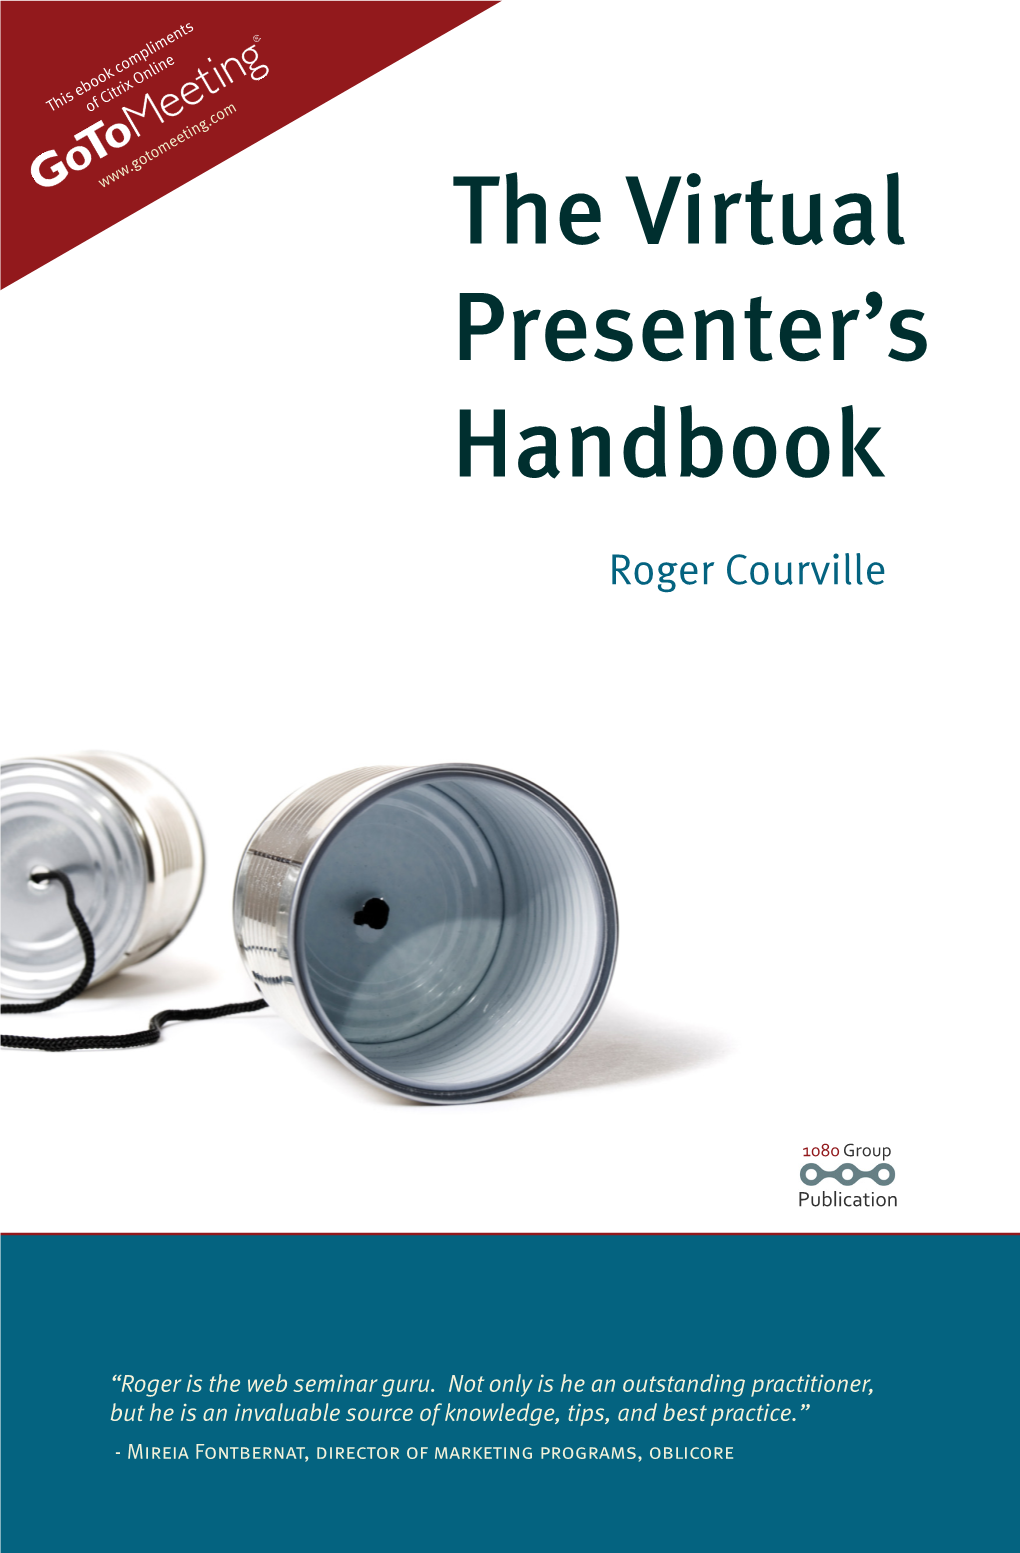 The Virtual Presenter's Handbook